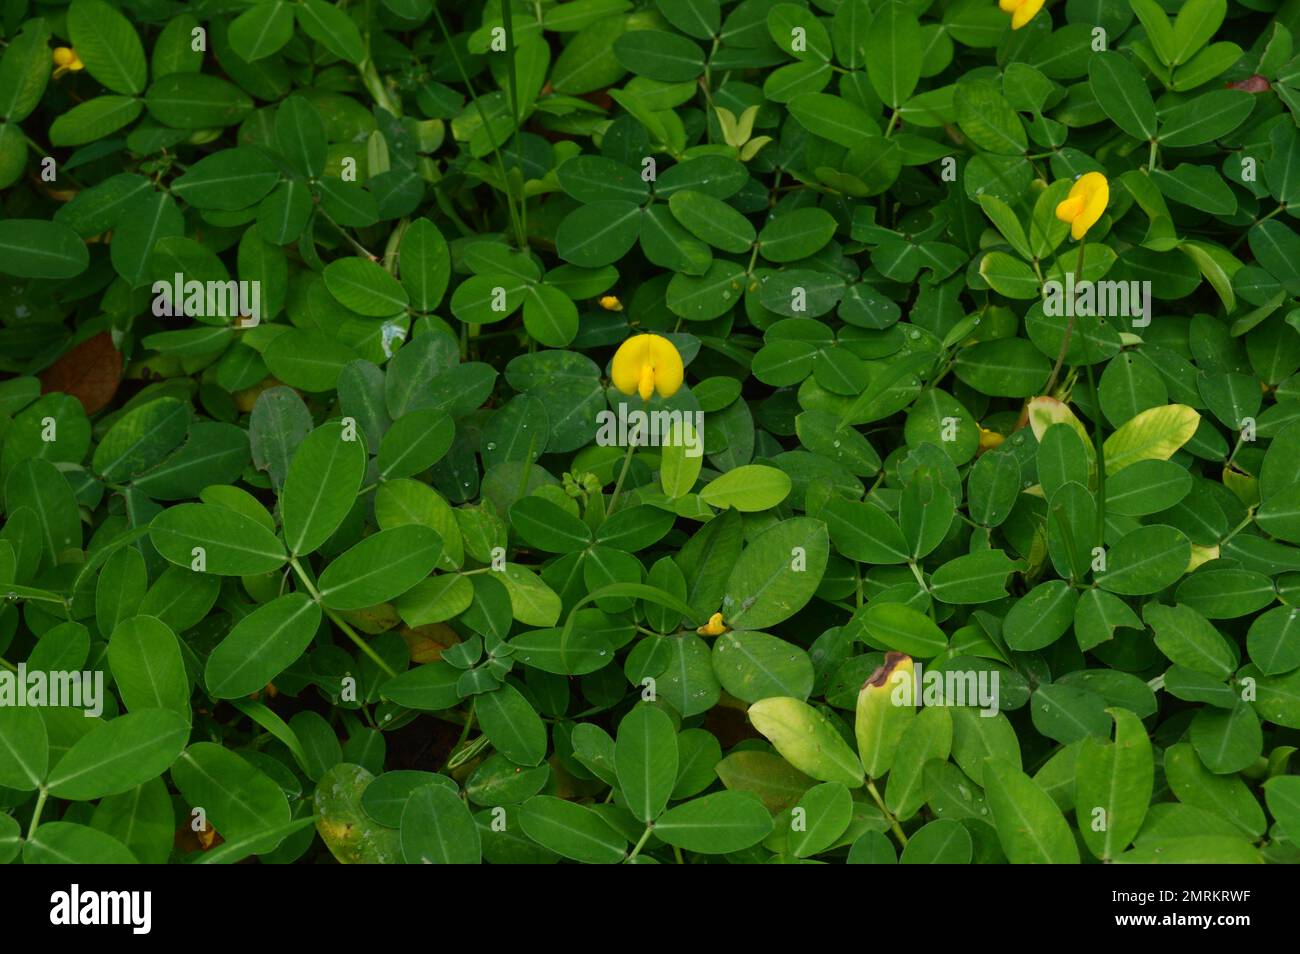 Pintoi grass (Arachis pintoi). Shrubs with lush green foliage adorn the garden. Stock Photo